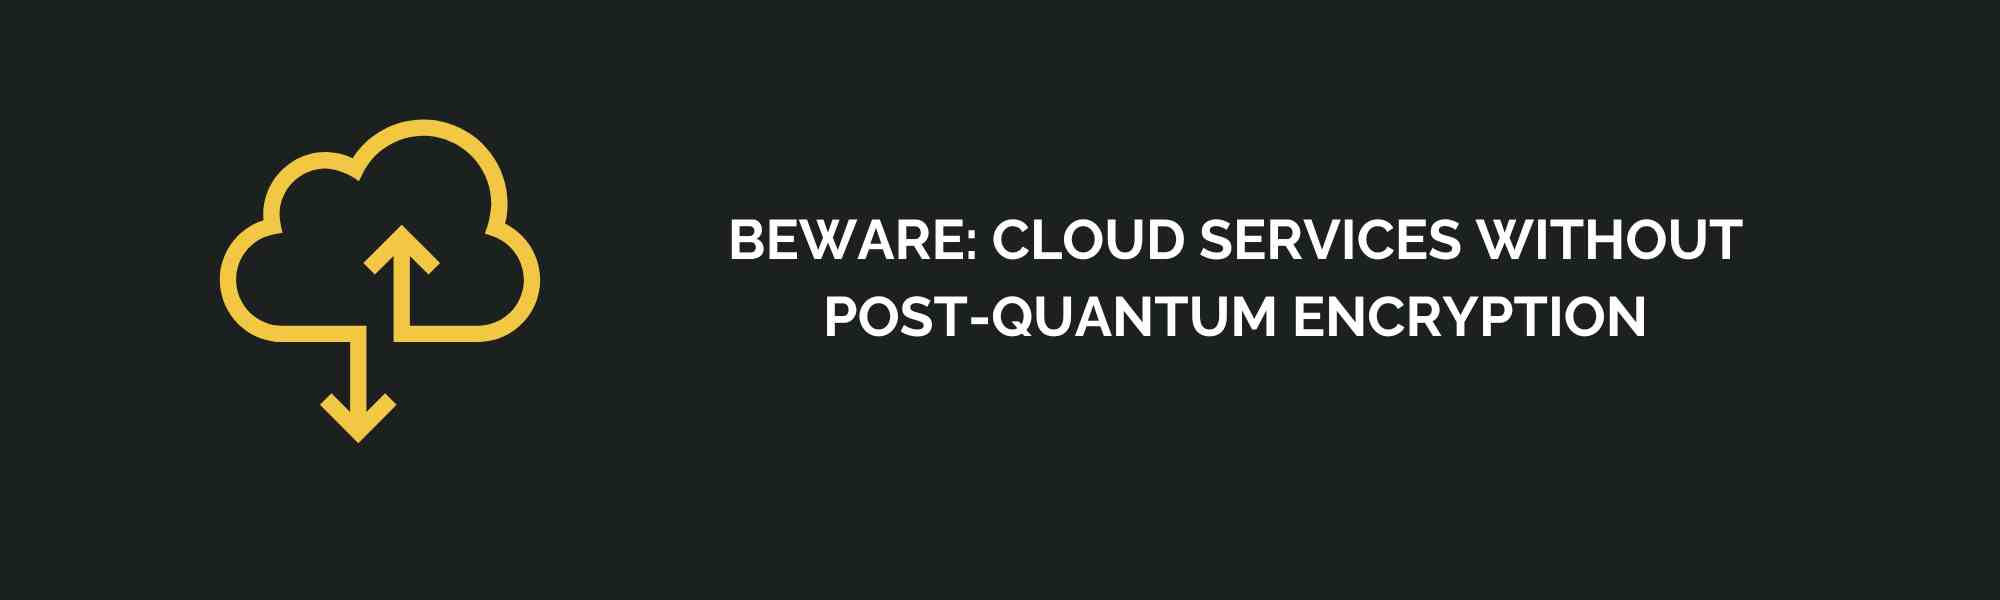 Beware: Cloud Services Without Post-Quantum Encryption